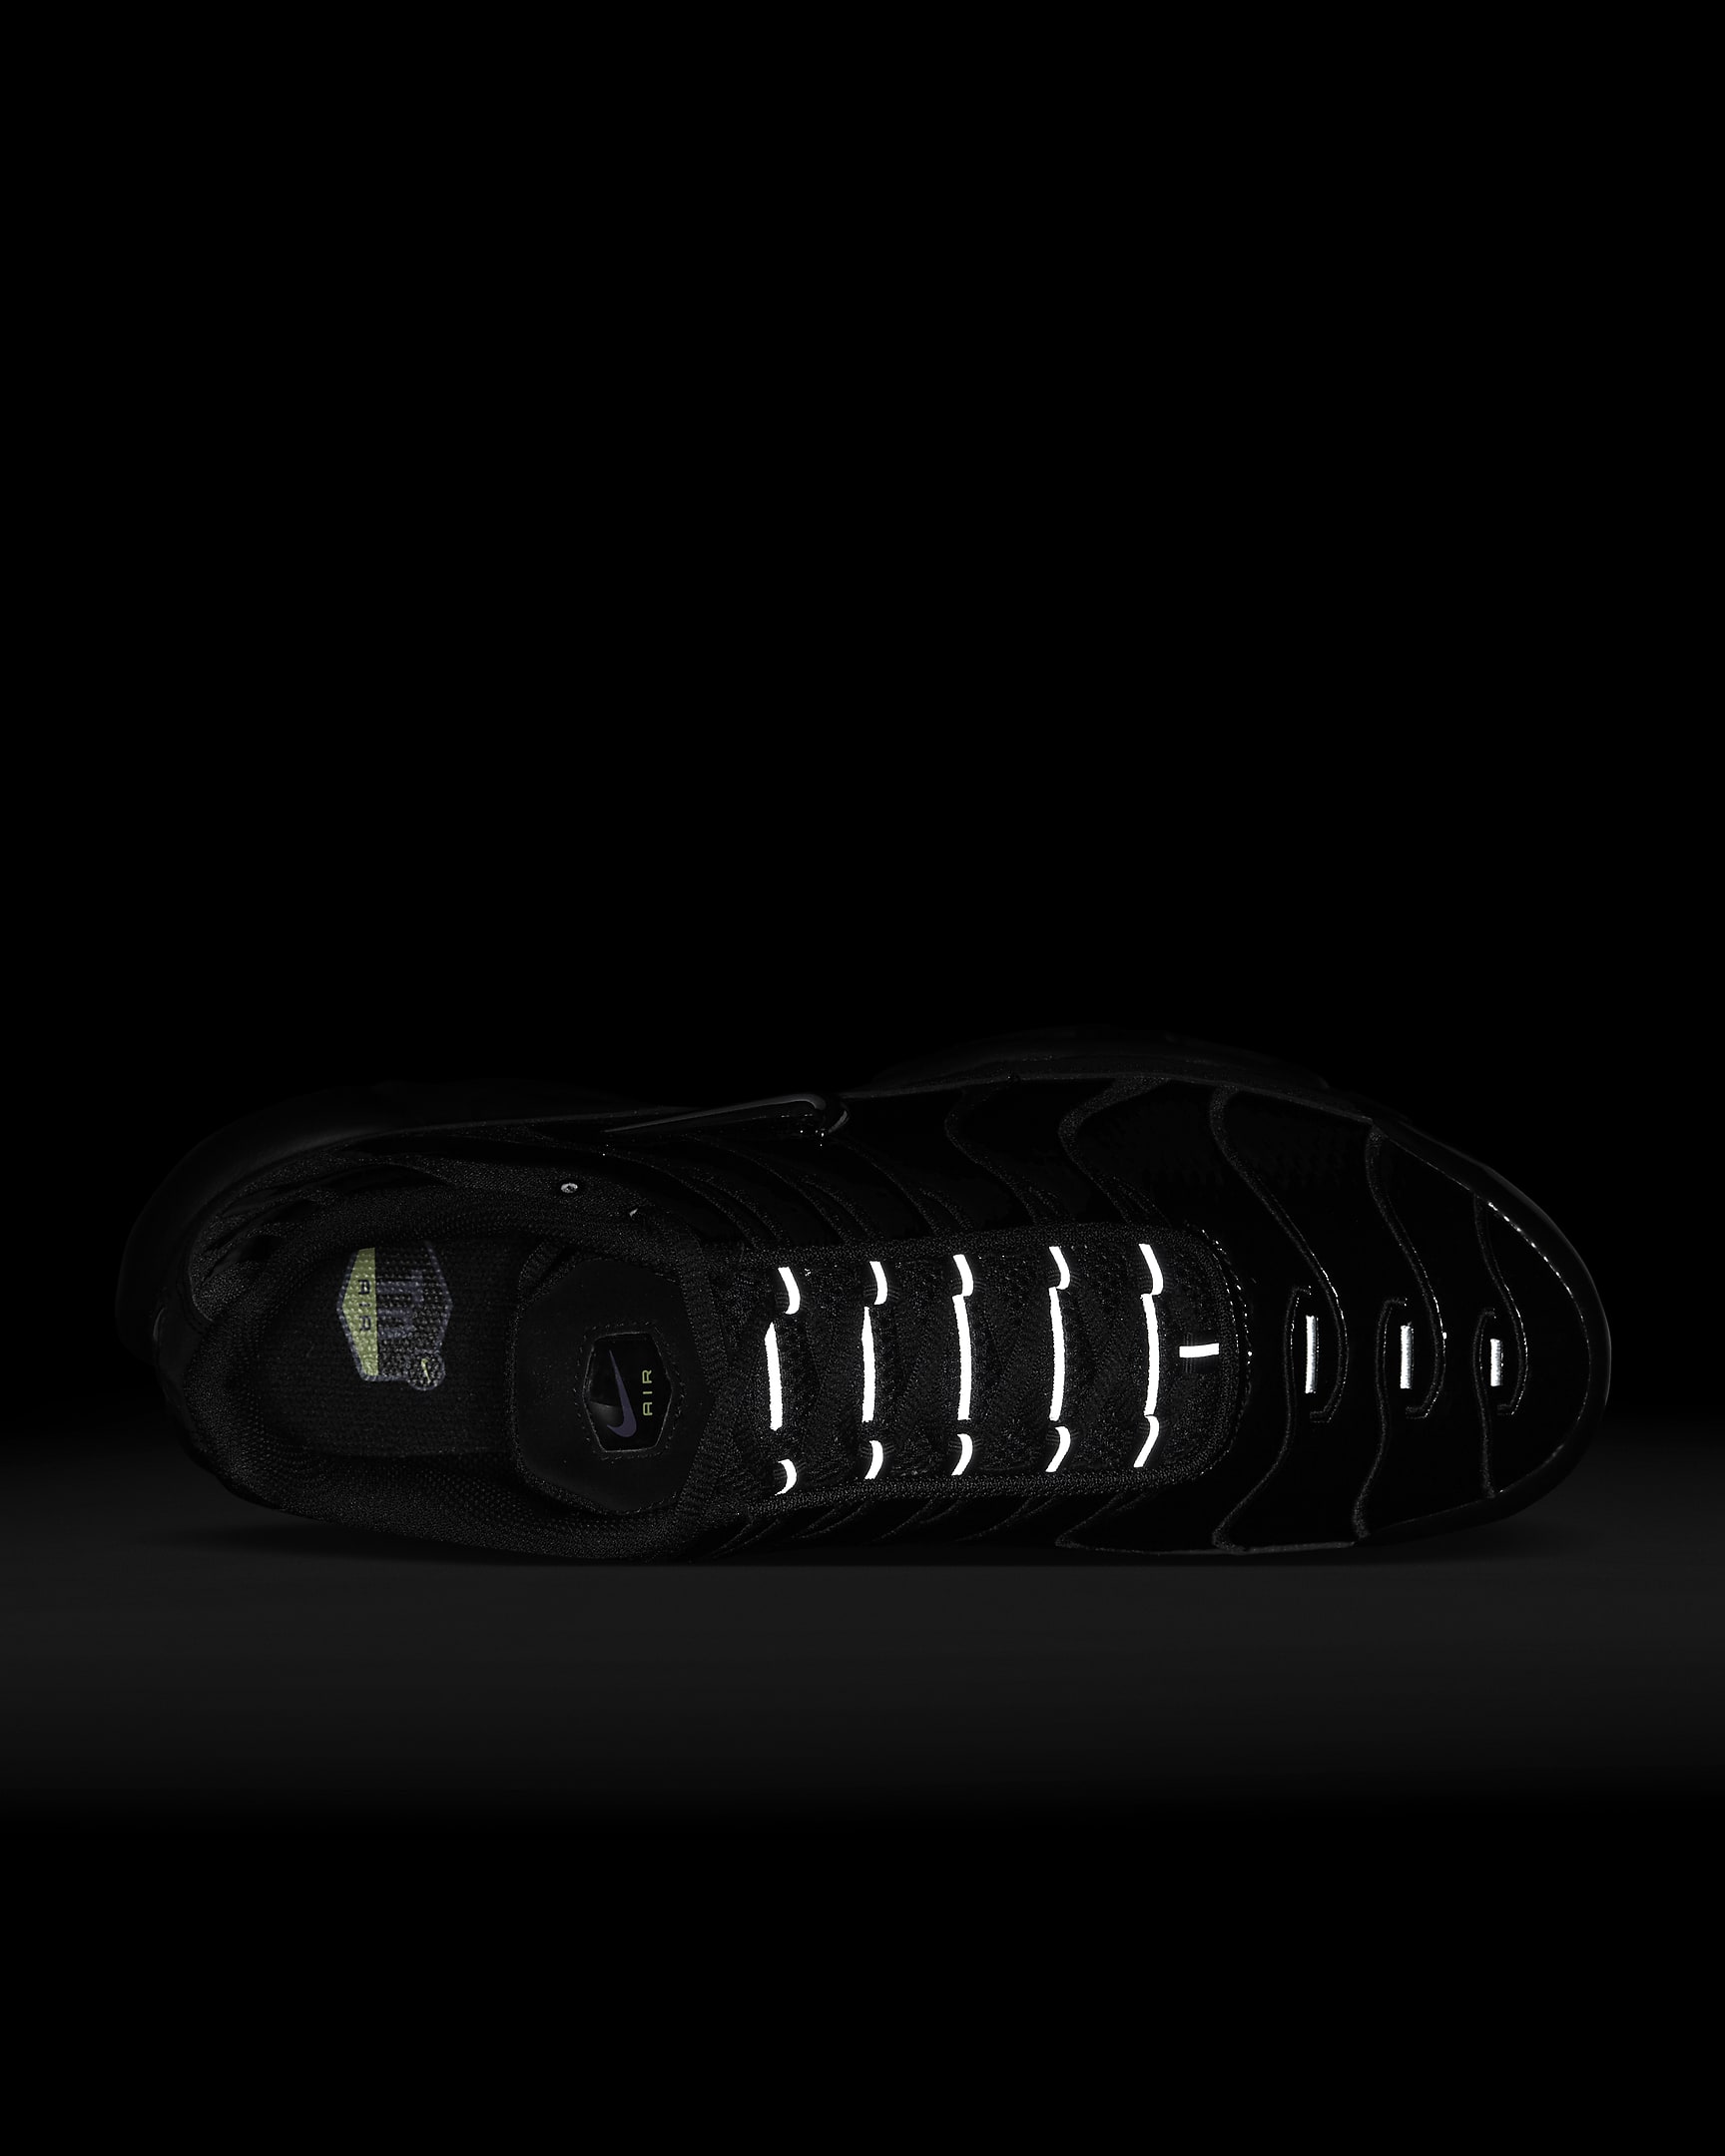 Sapatilhas Nike Air Max Plus para homem - Preto/Volt/Concord/Prateado metalizado